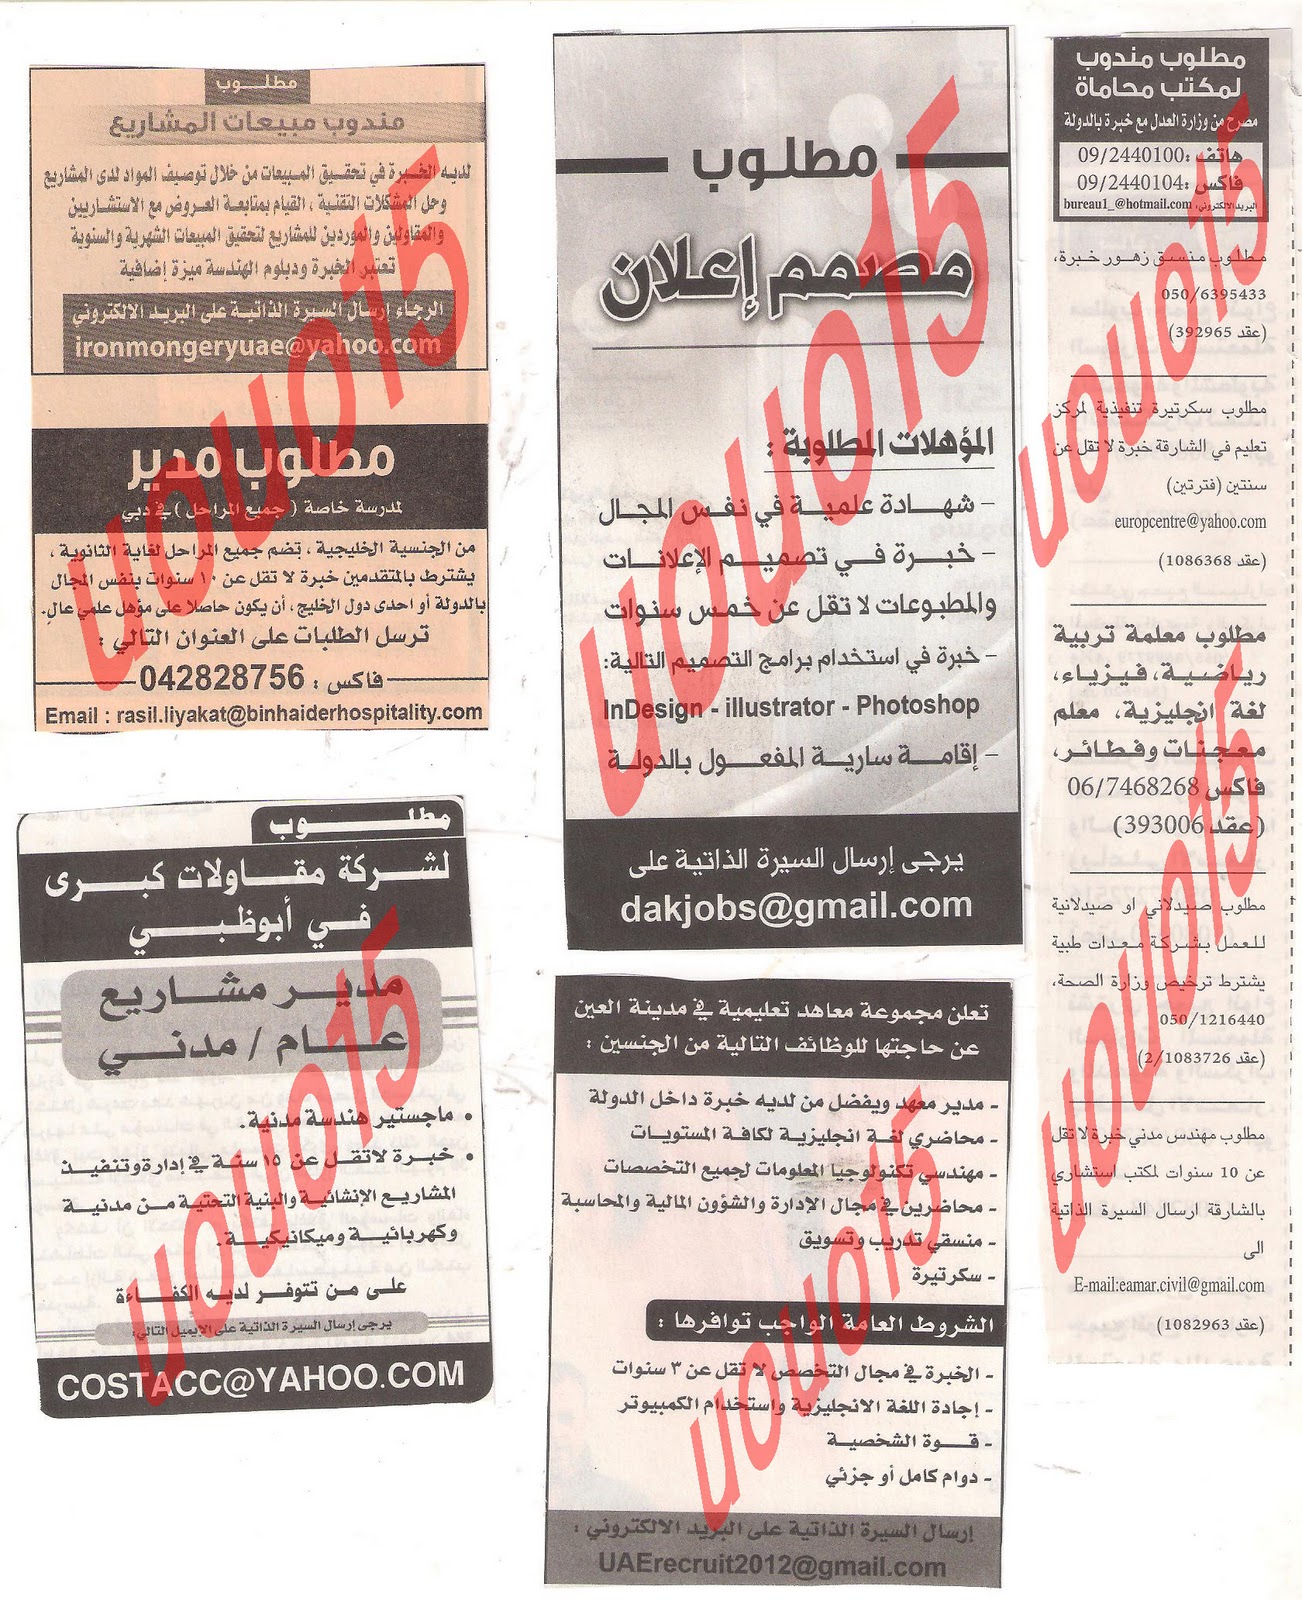 وظائف شاغرة من جريدة الخليج الاربعاء 21\12\2011  Picture+006